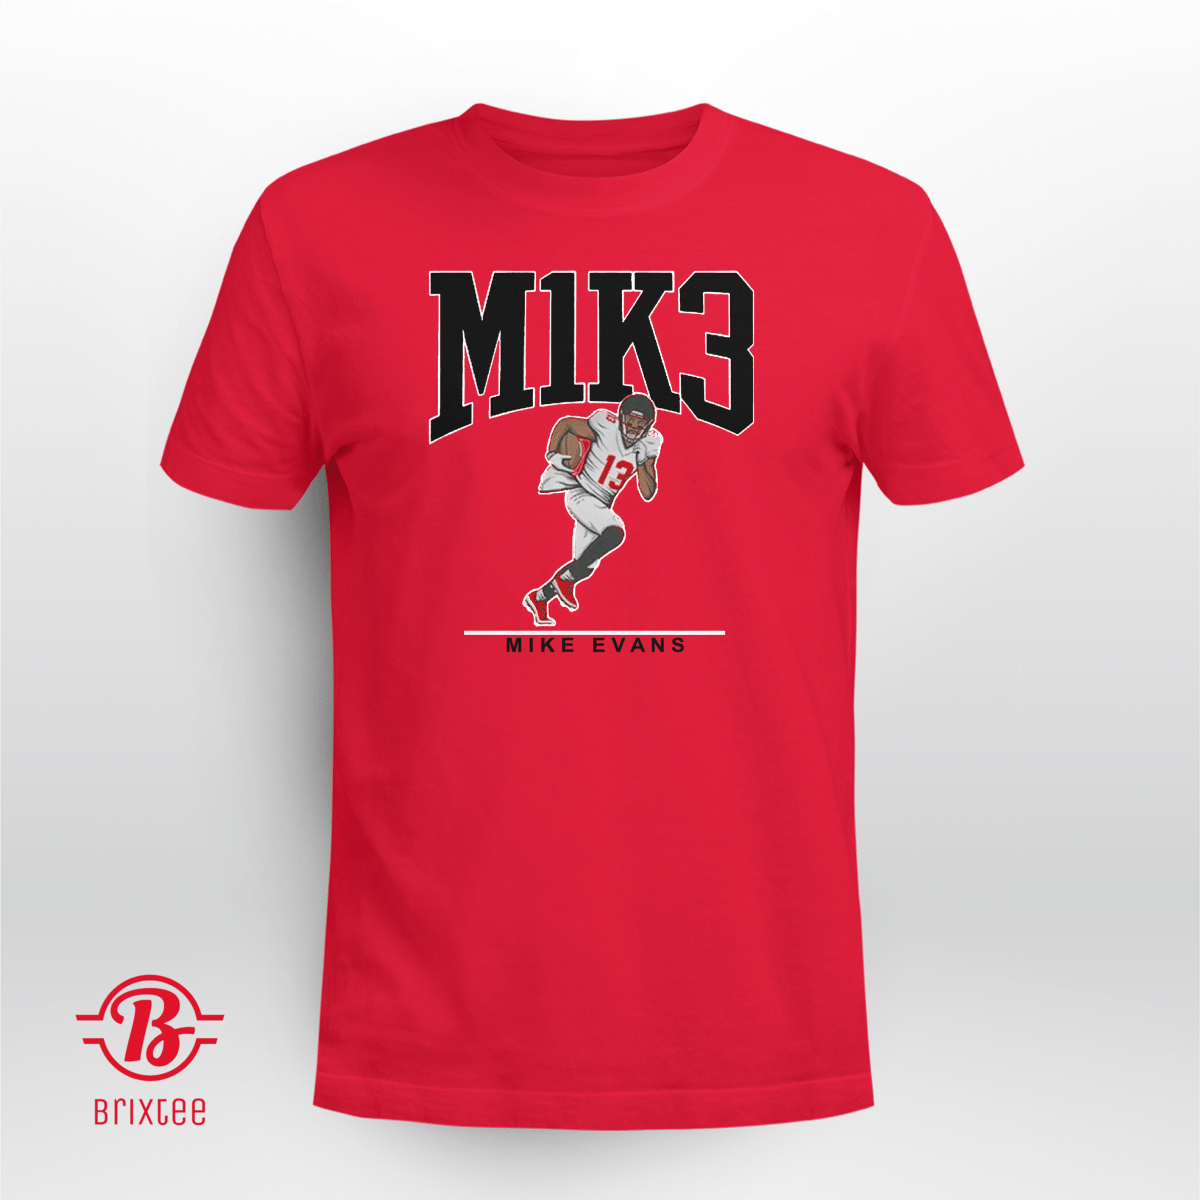 Mike Evans: M1K3 | Tampa Bay Buccaneers | NFLPA Licensed